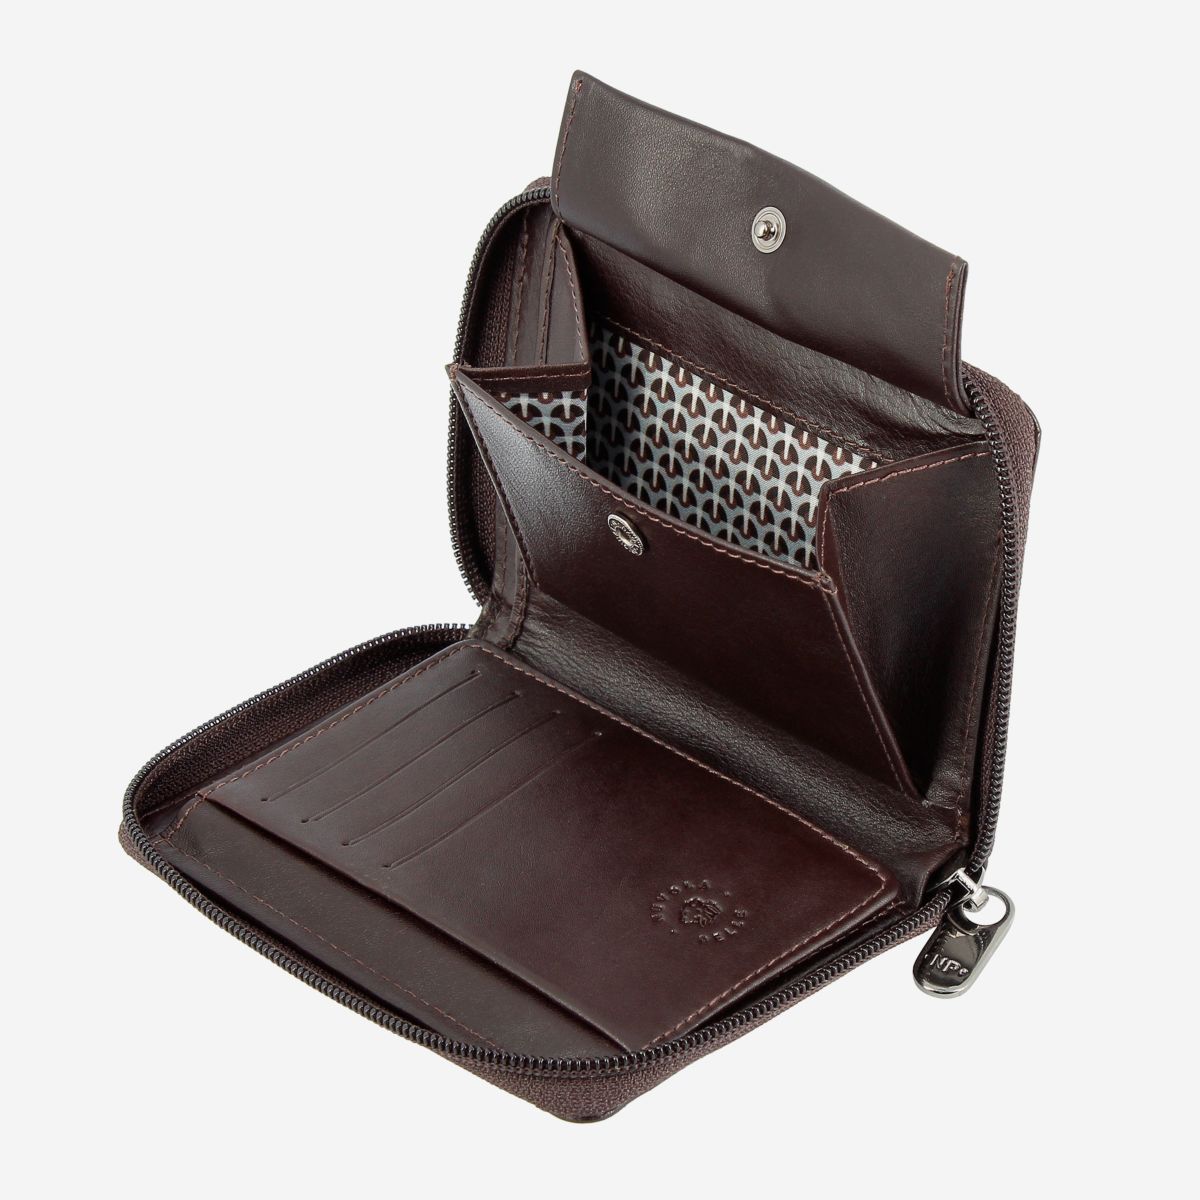 NUVOLA PELLE RFID Mens Leather Wallet with Zip - Dark Brown